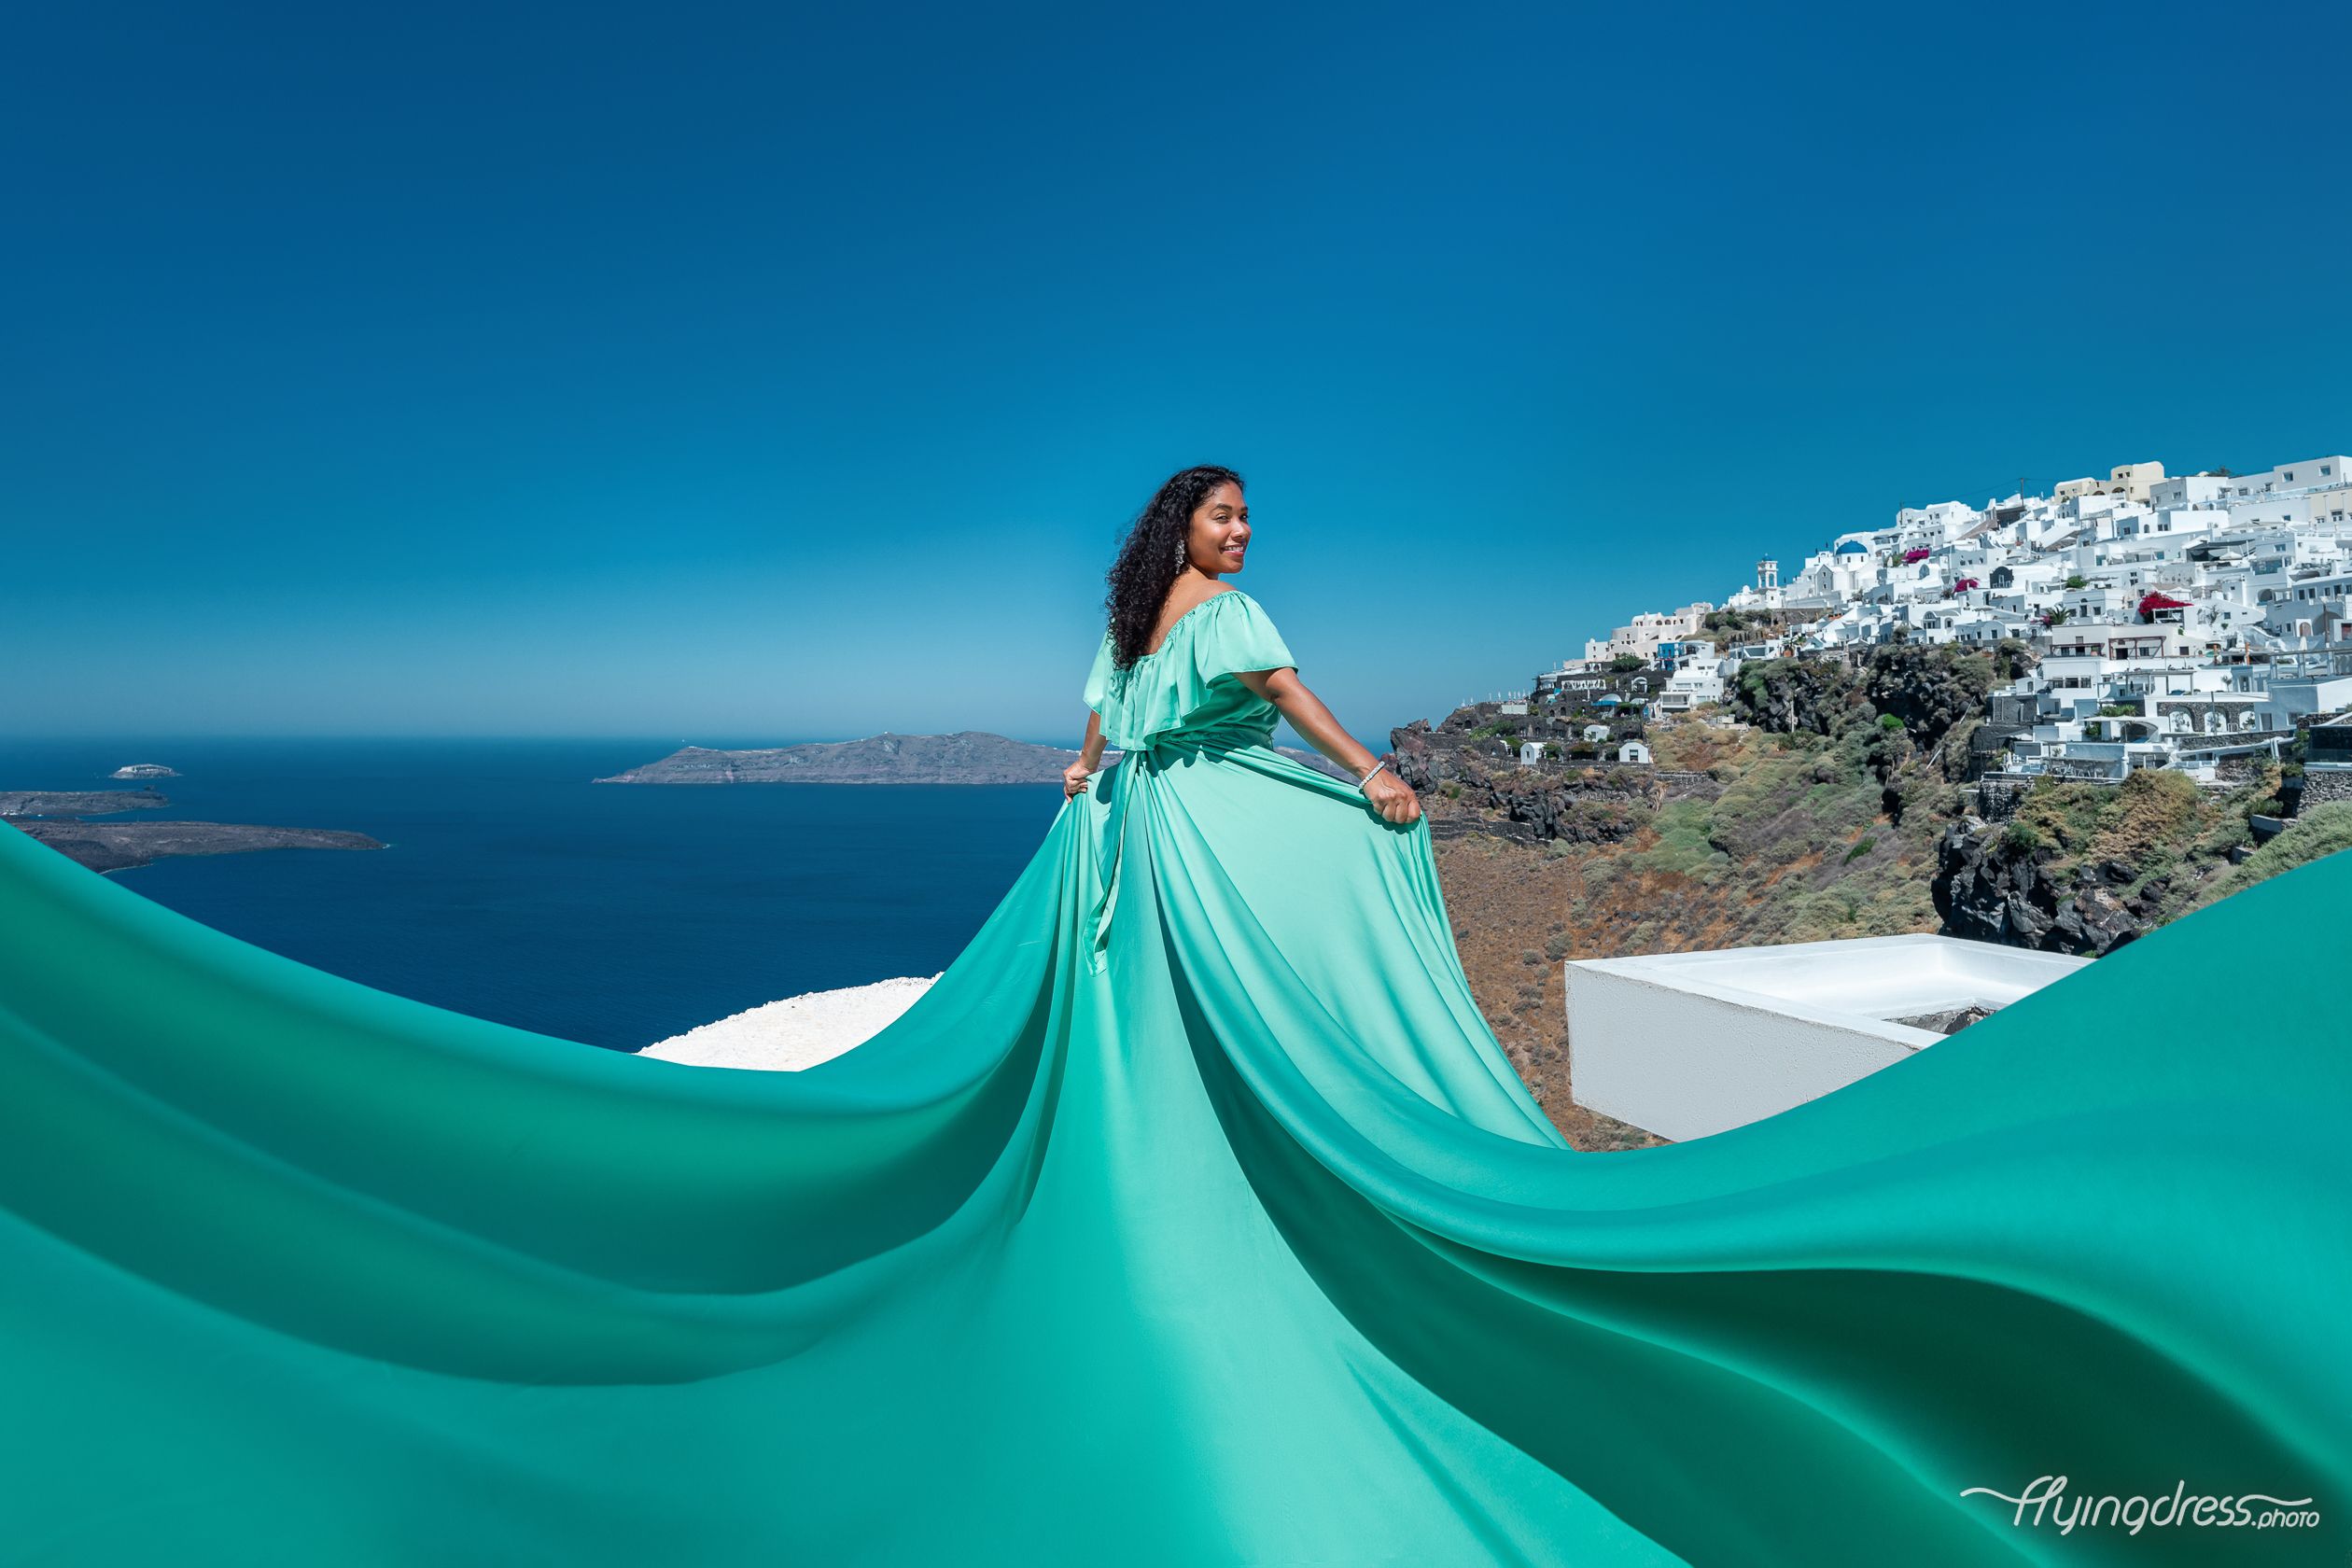 Santorini flying dress black girl photoshoot